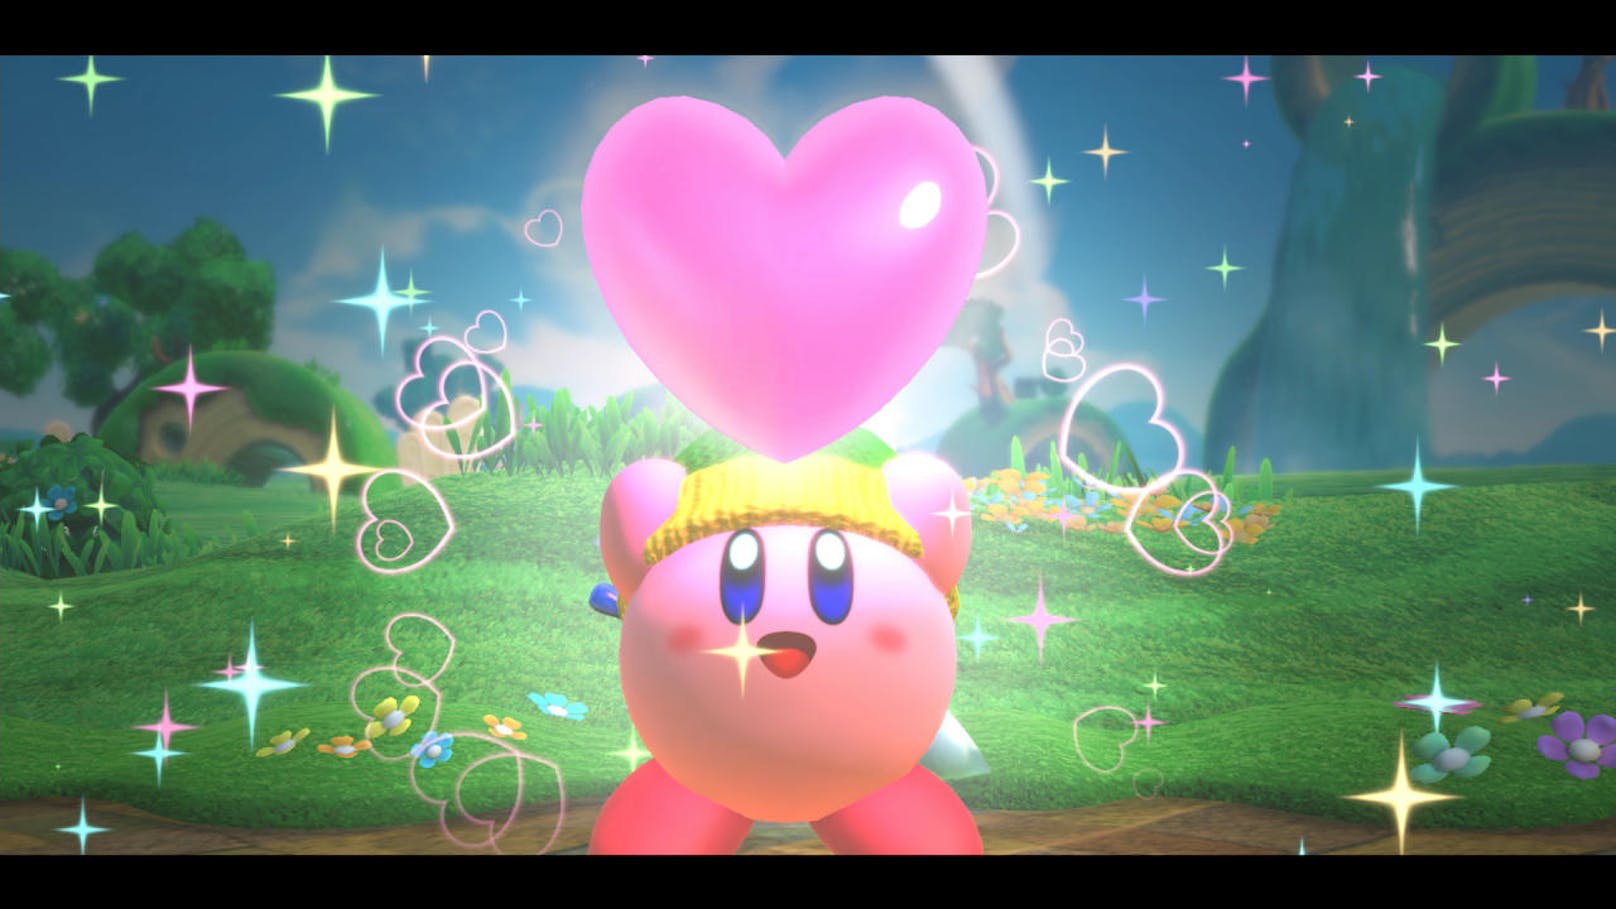  <a href="https://www.heute.at/digital/games/story/Kirby-Star-Allies-im-Test--Das-wohl-herzigste-Abenteuer-44063636" target="_blank">Kirby Star Allies</a>